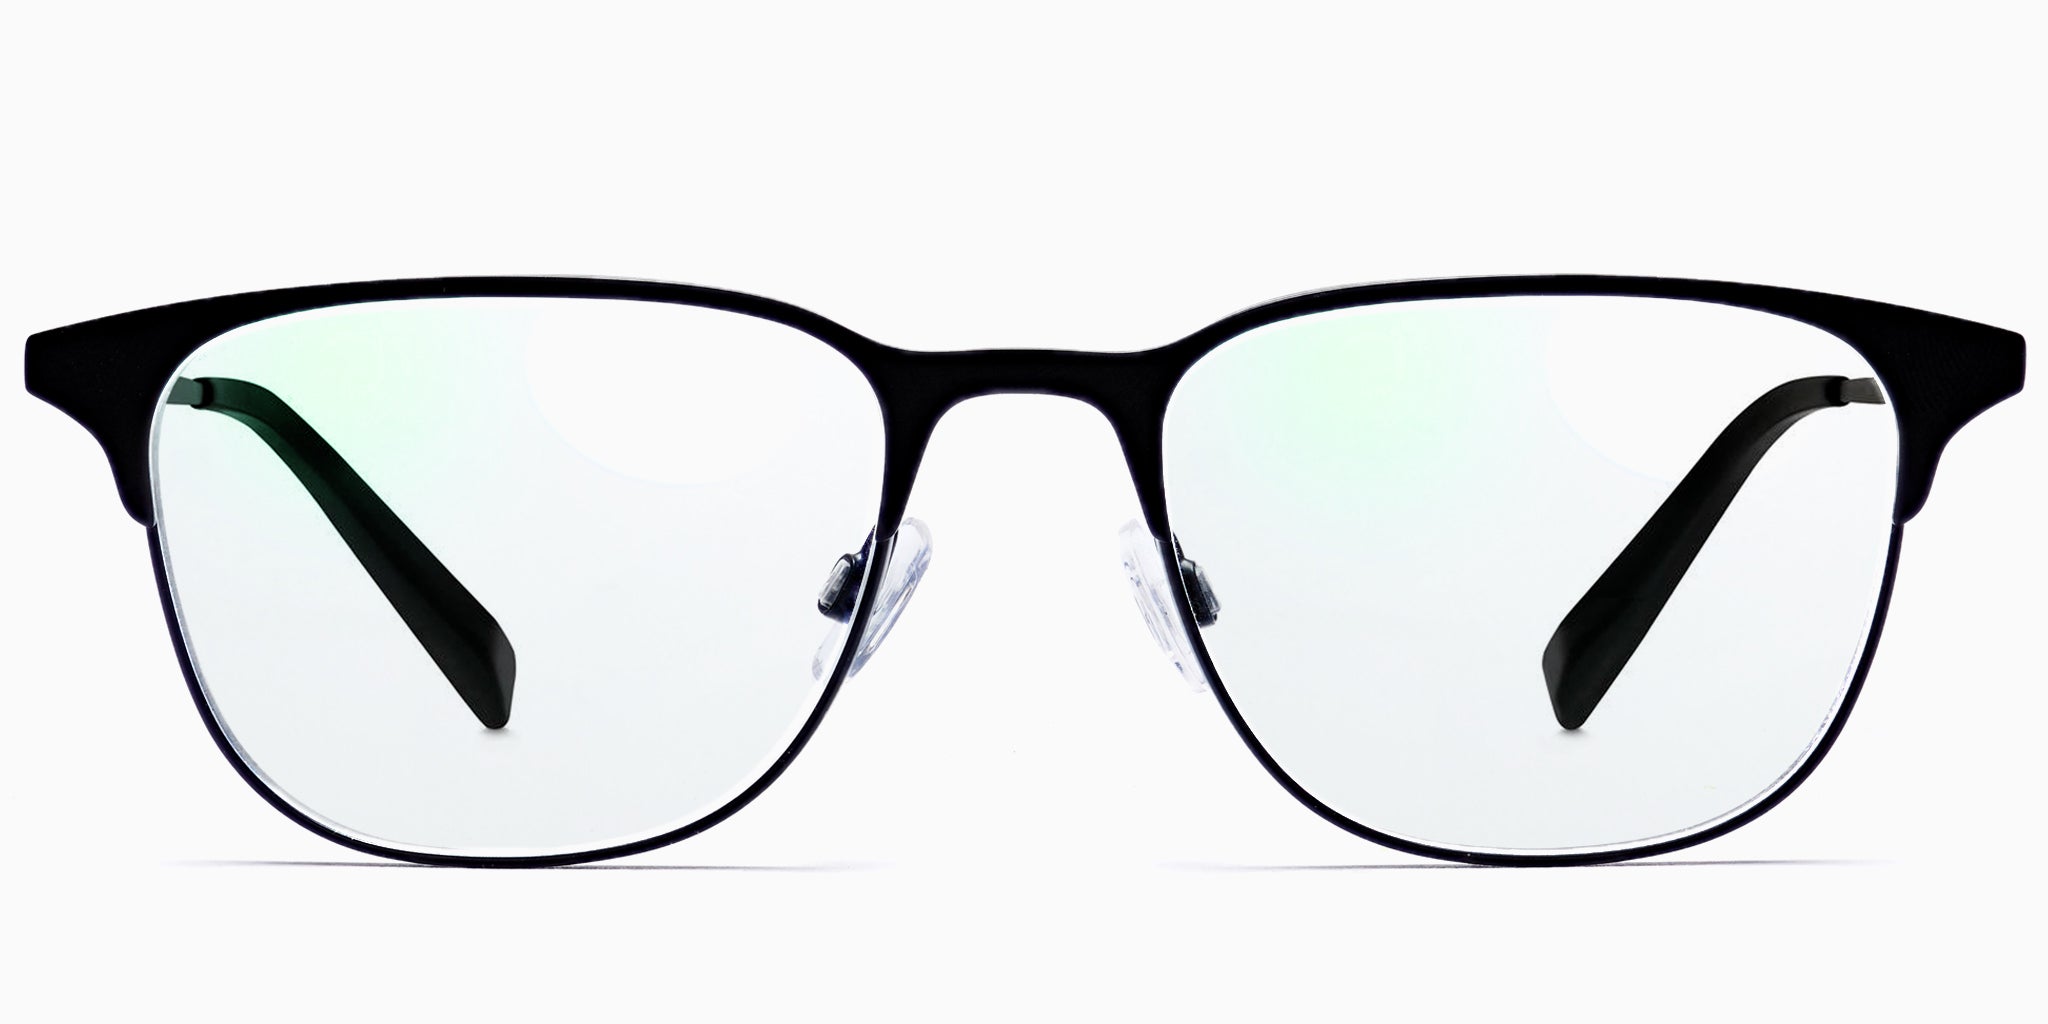 Progressive glasses